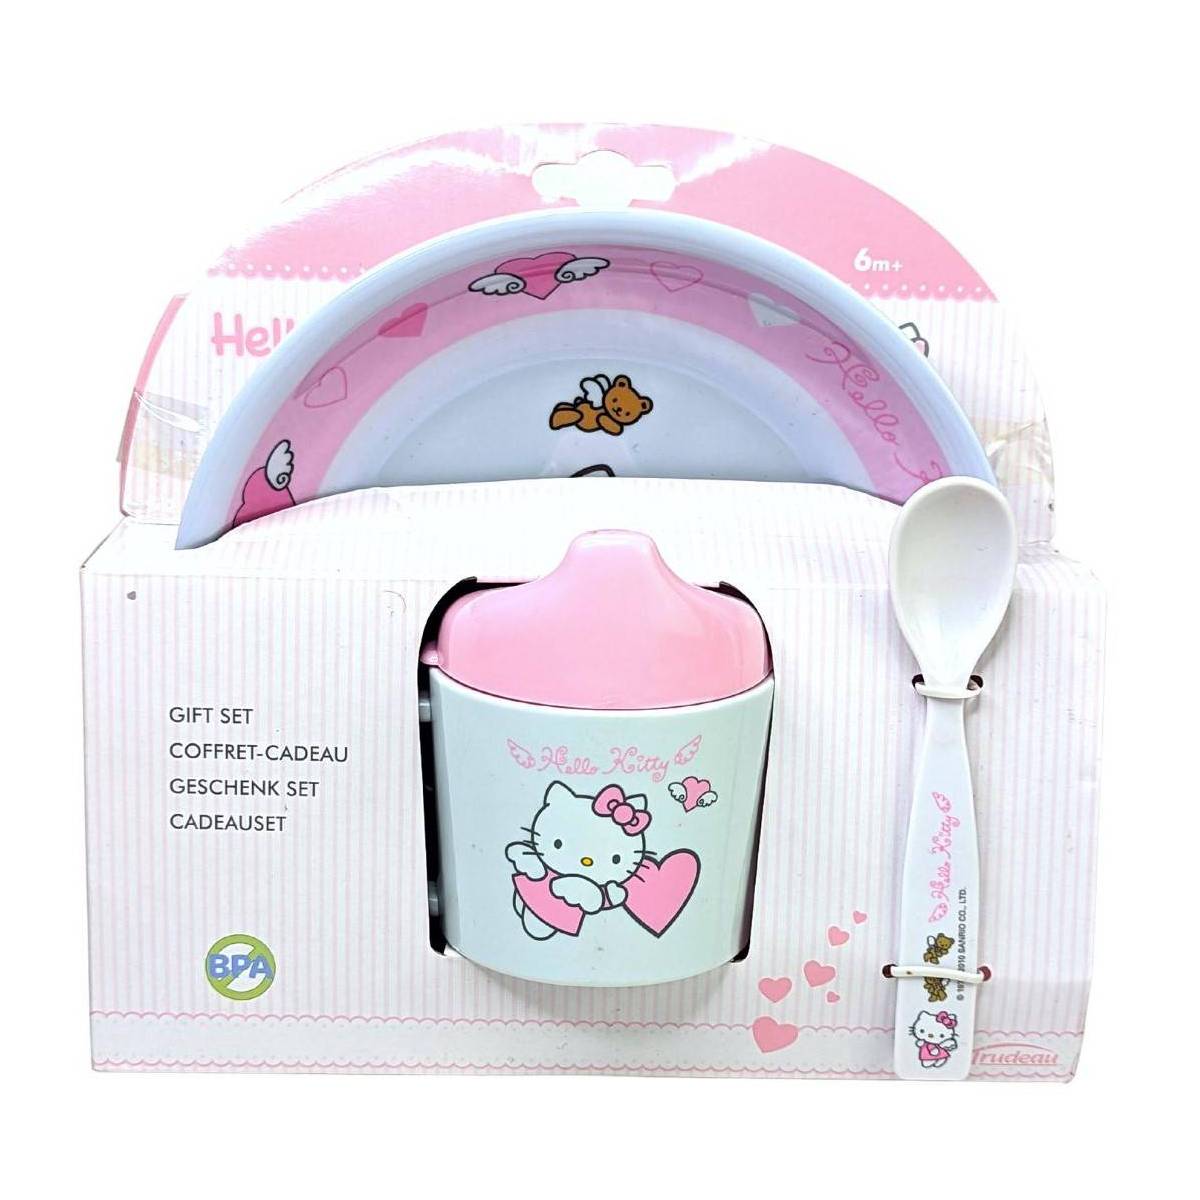 Coffret cadeau Tasse, cuillière, assiette Hello Kitty 6mois+